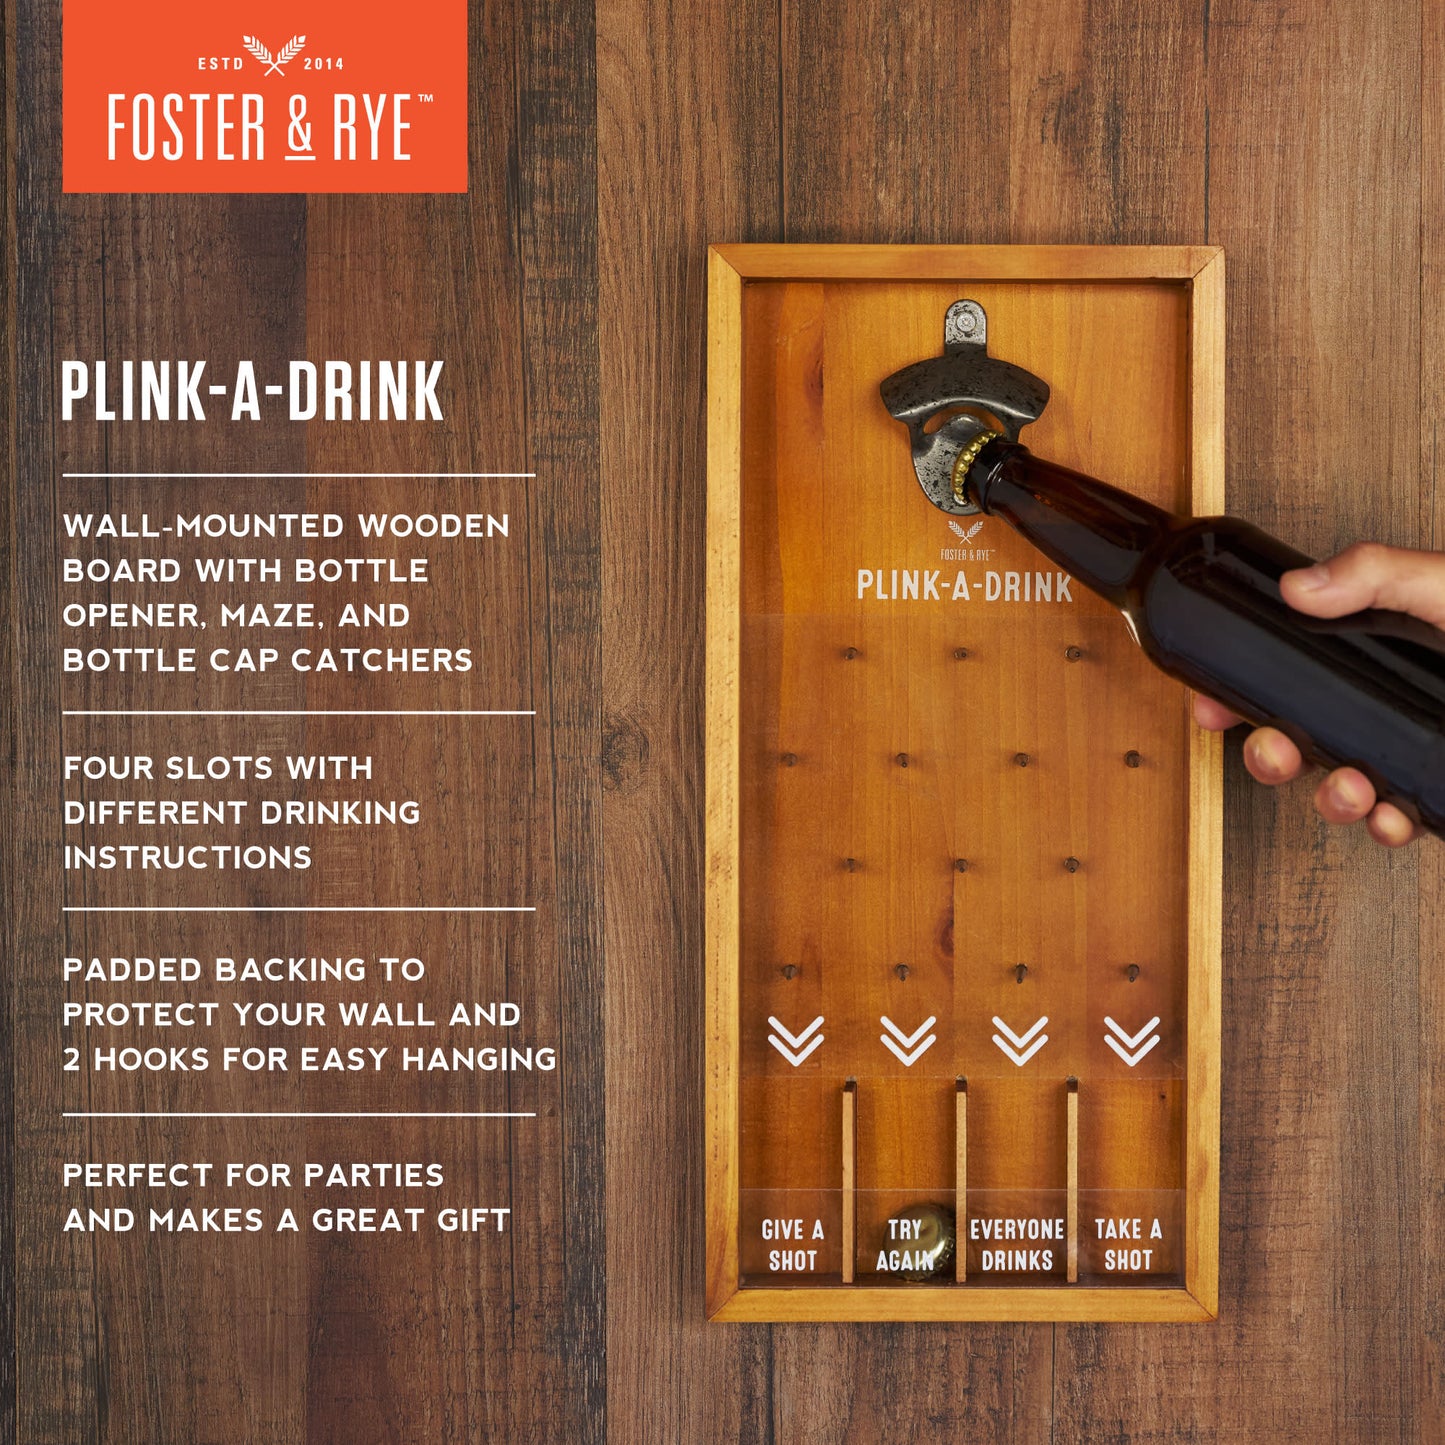 Plink-A-Drink by Foster & Rye